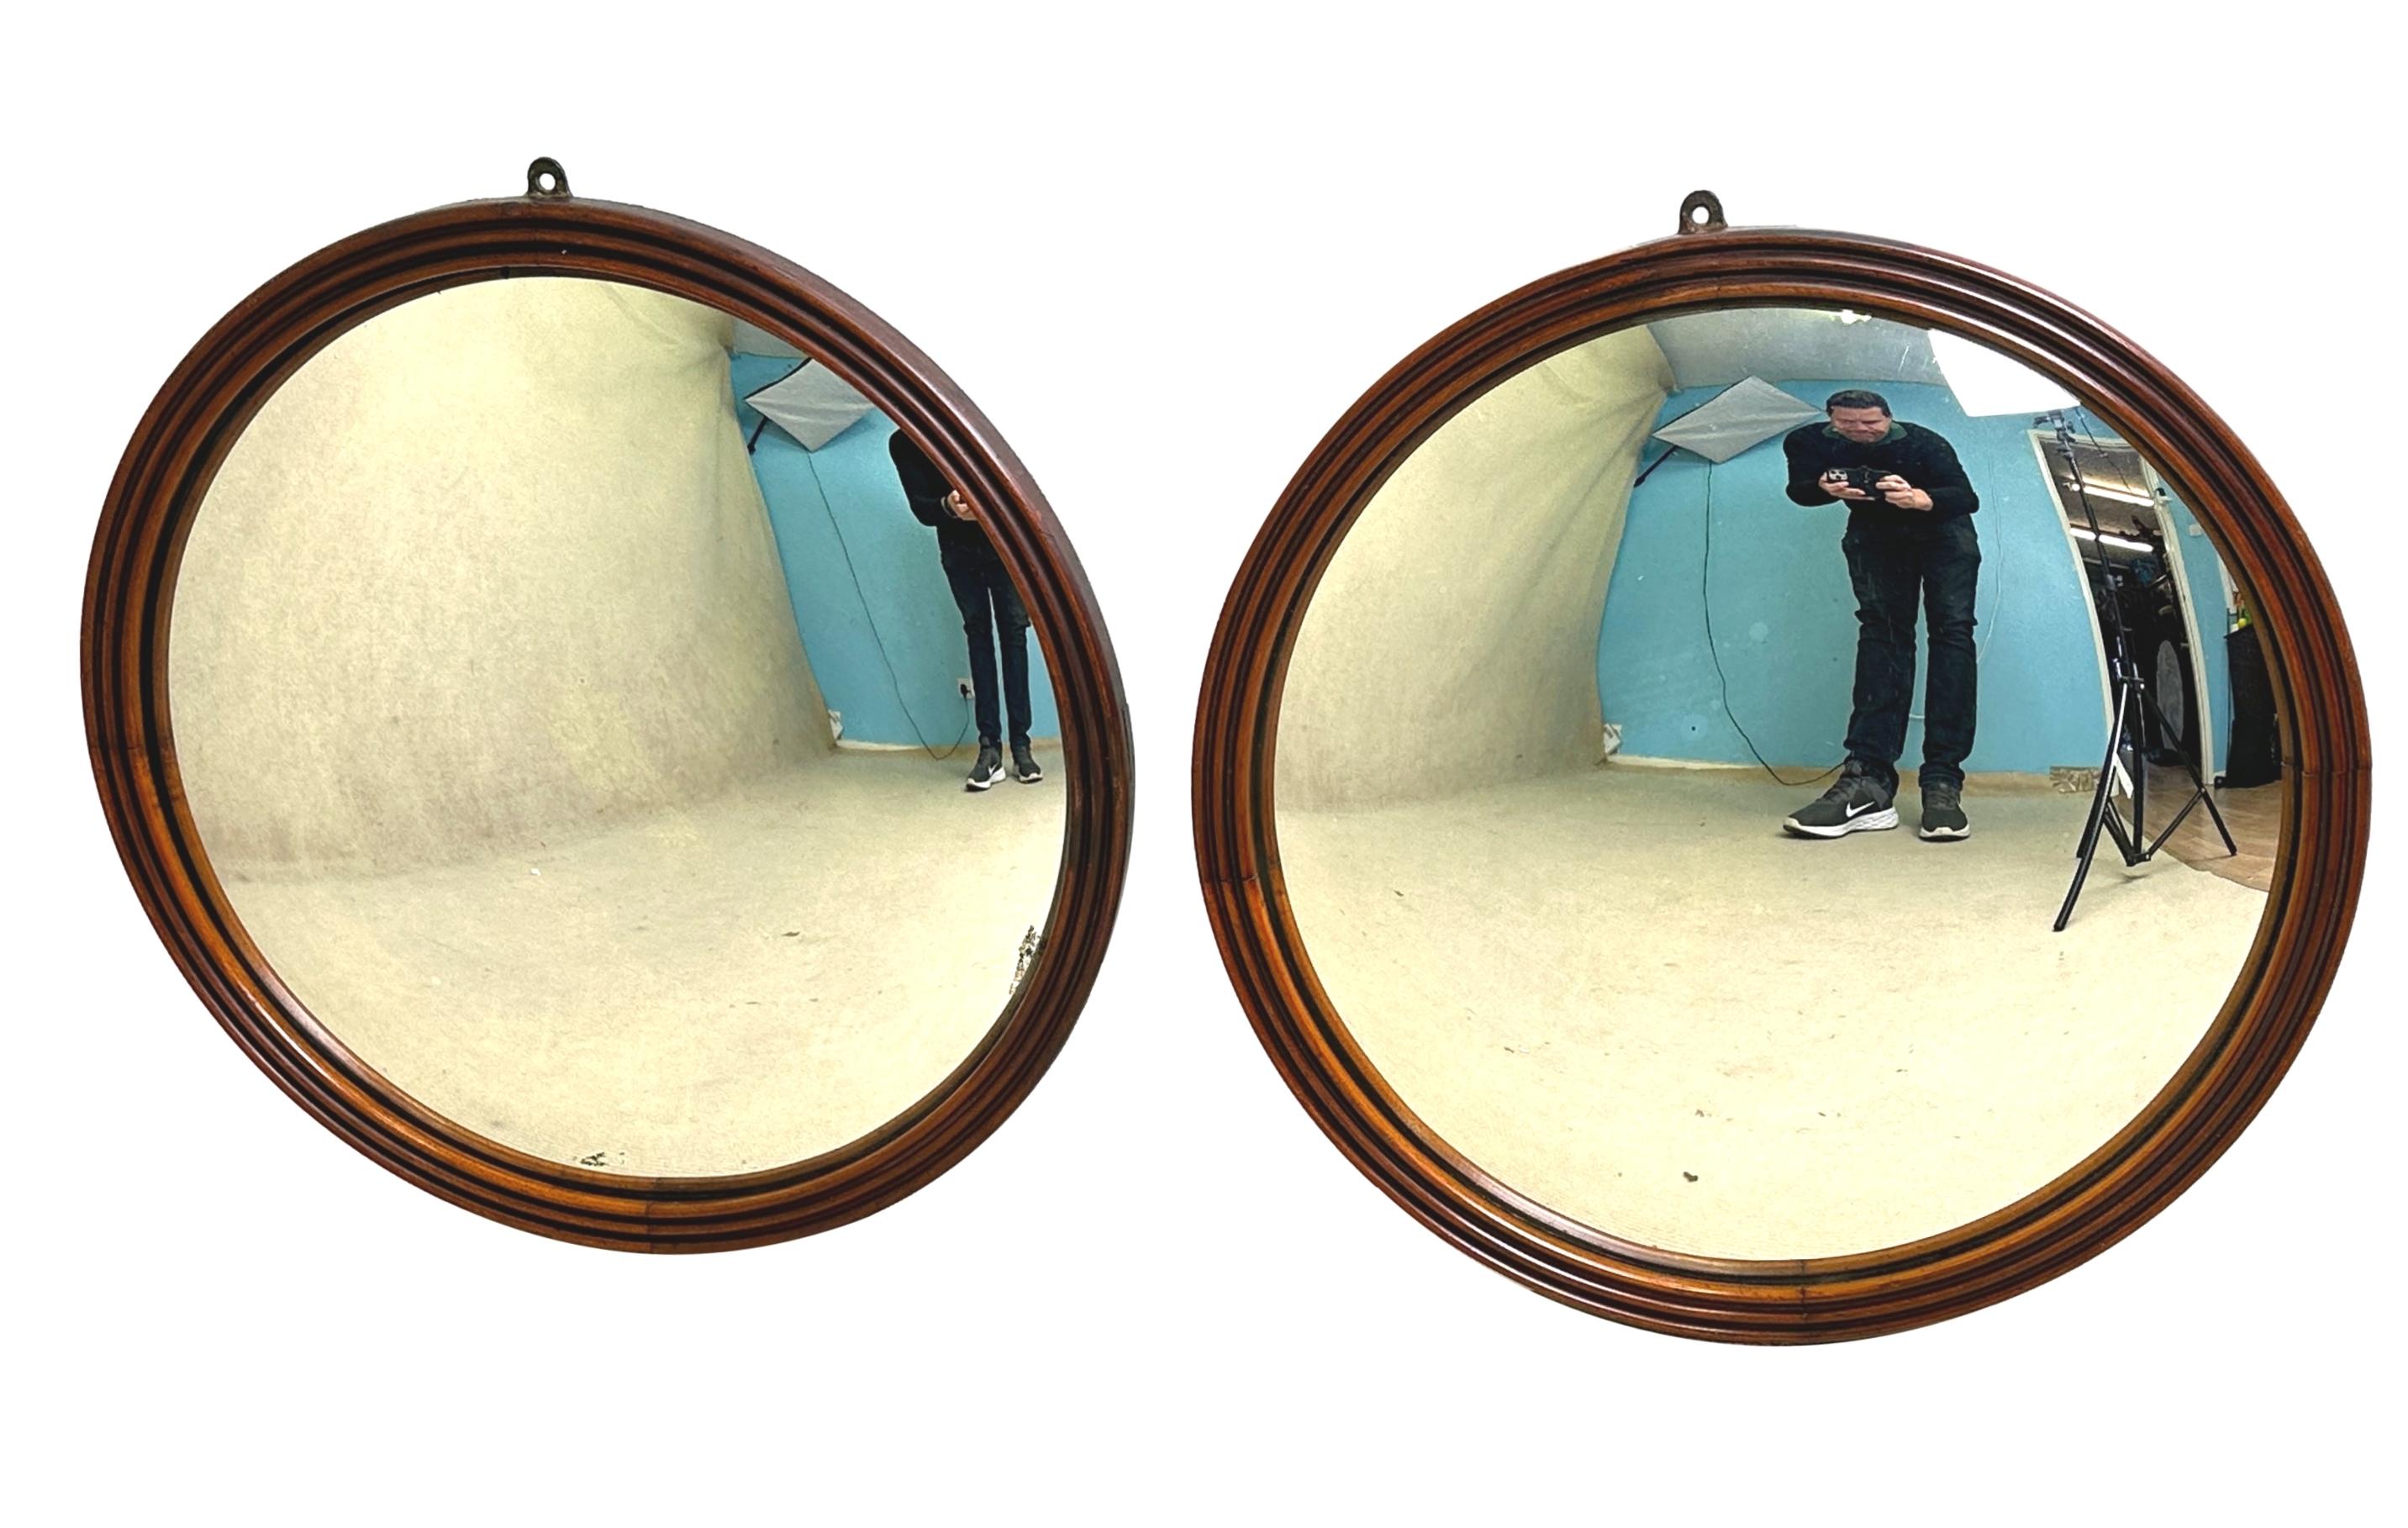 Paire de miroirs circulaires du milieu du XIXe siècle de très bonne qualité et rarement trouvés, présentant de manière inhabituelle des cadres en acajou attrayants avec une élégante décoration de cannelures, renfermant des plaques de miroir convexes